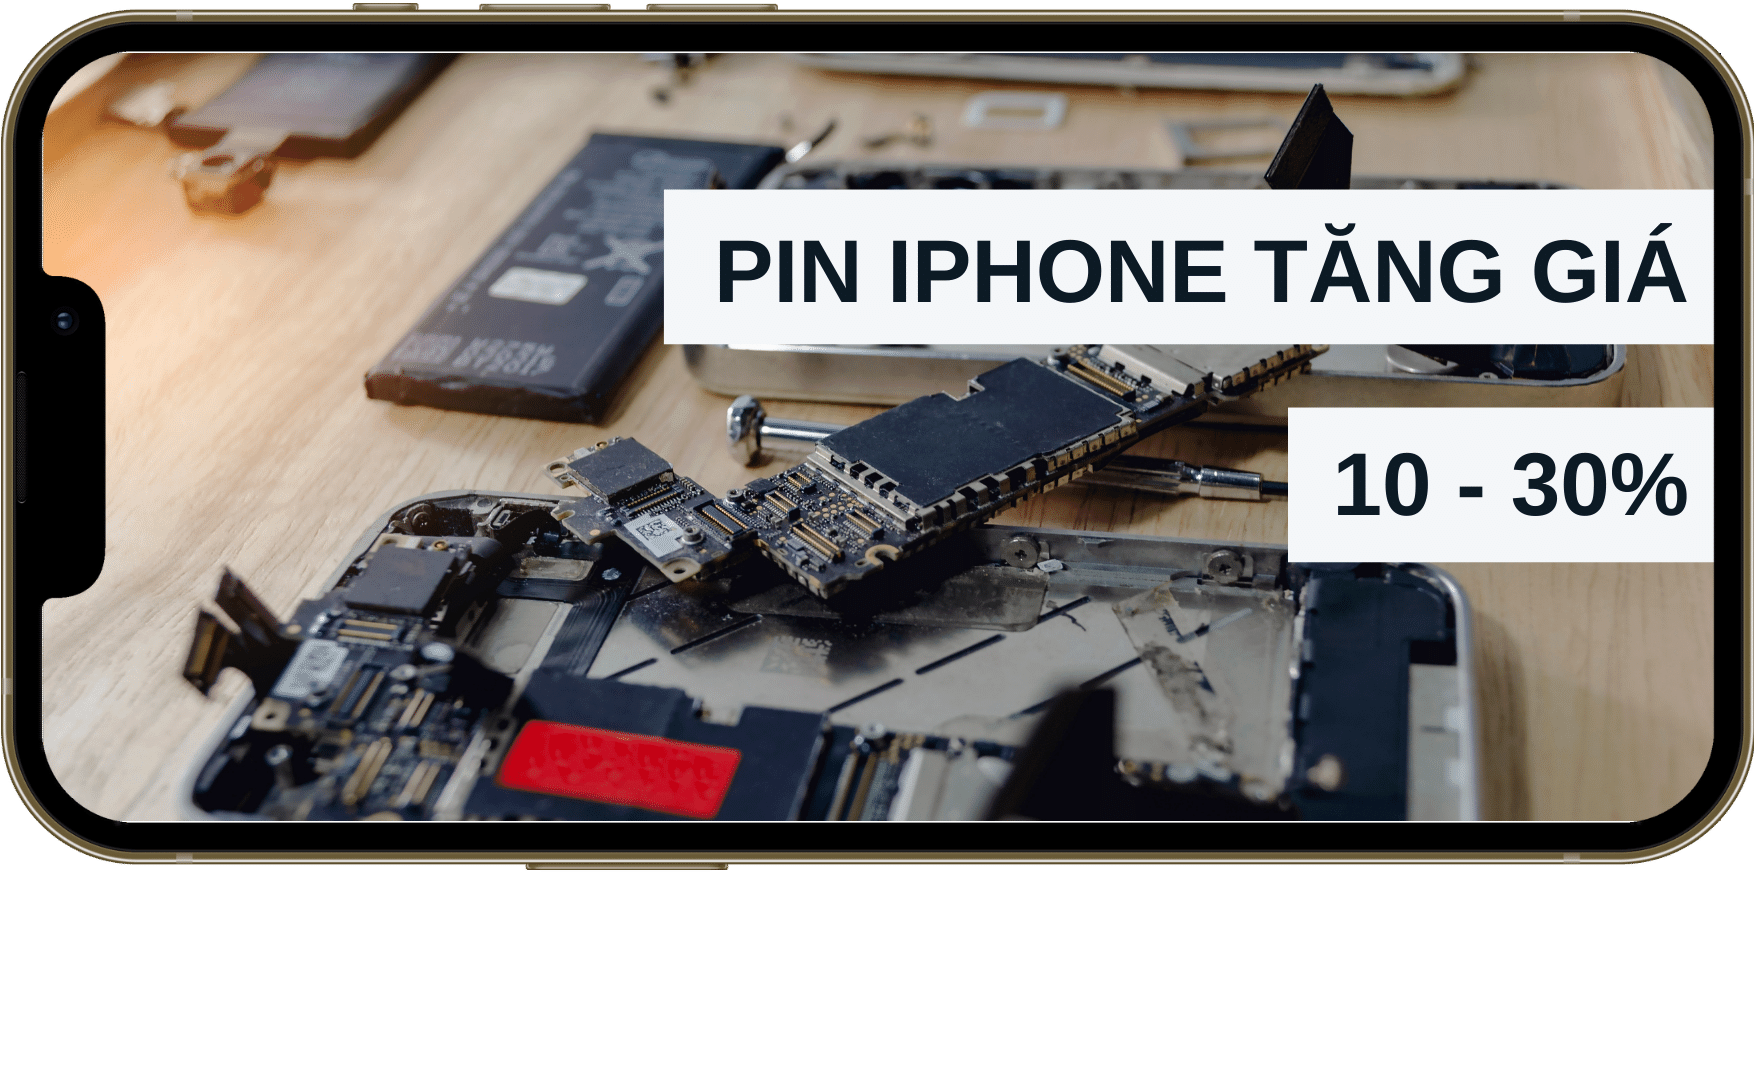 Giá thay pin iPhone tại Việt Nam tăng 10-30%